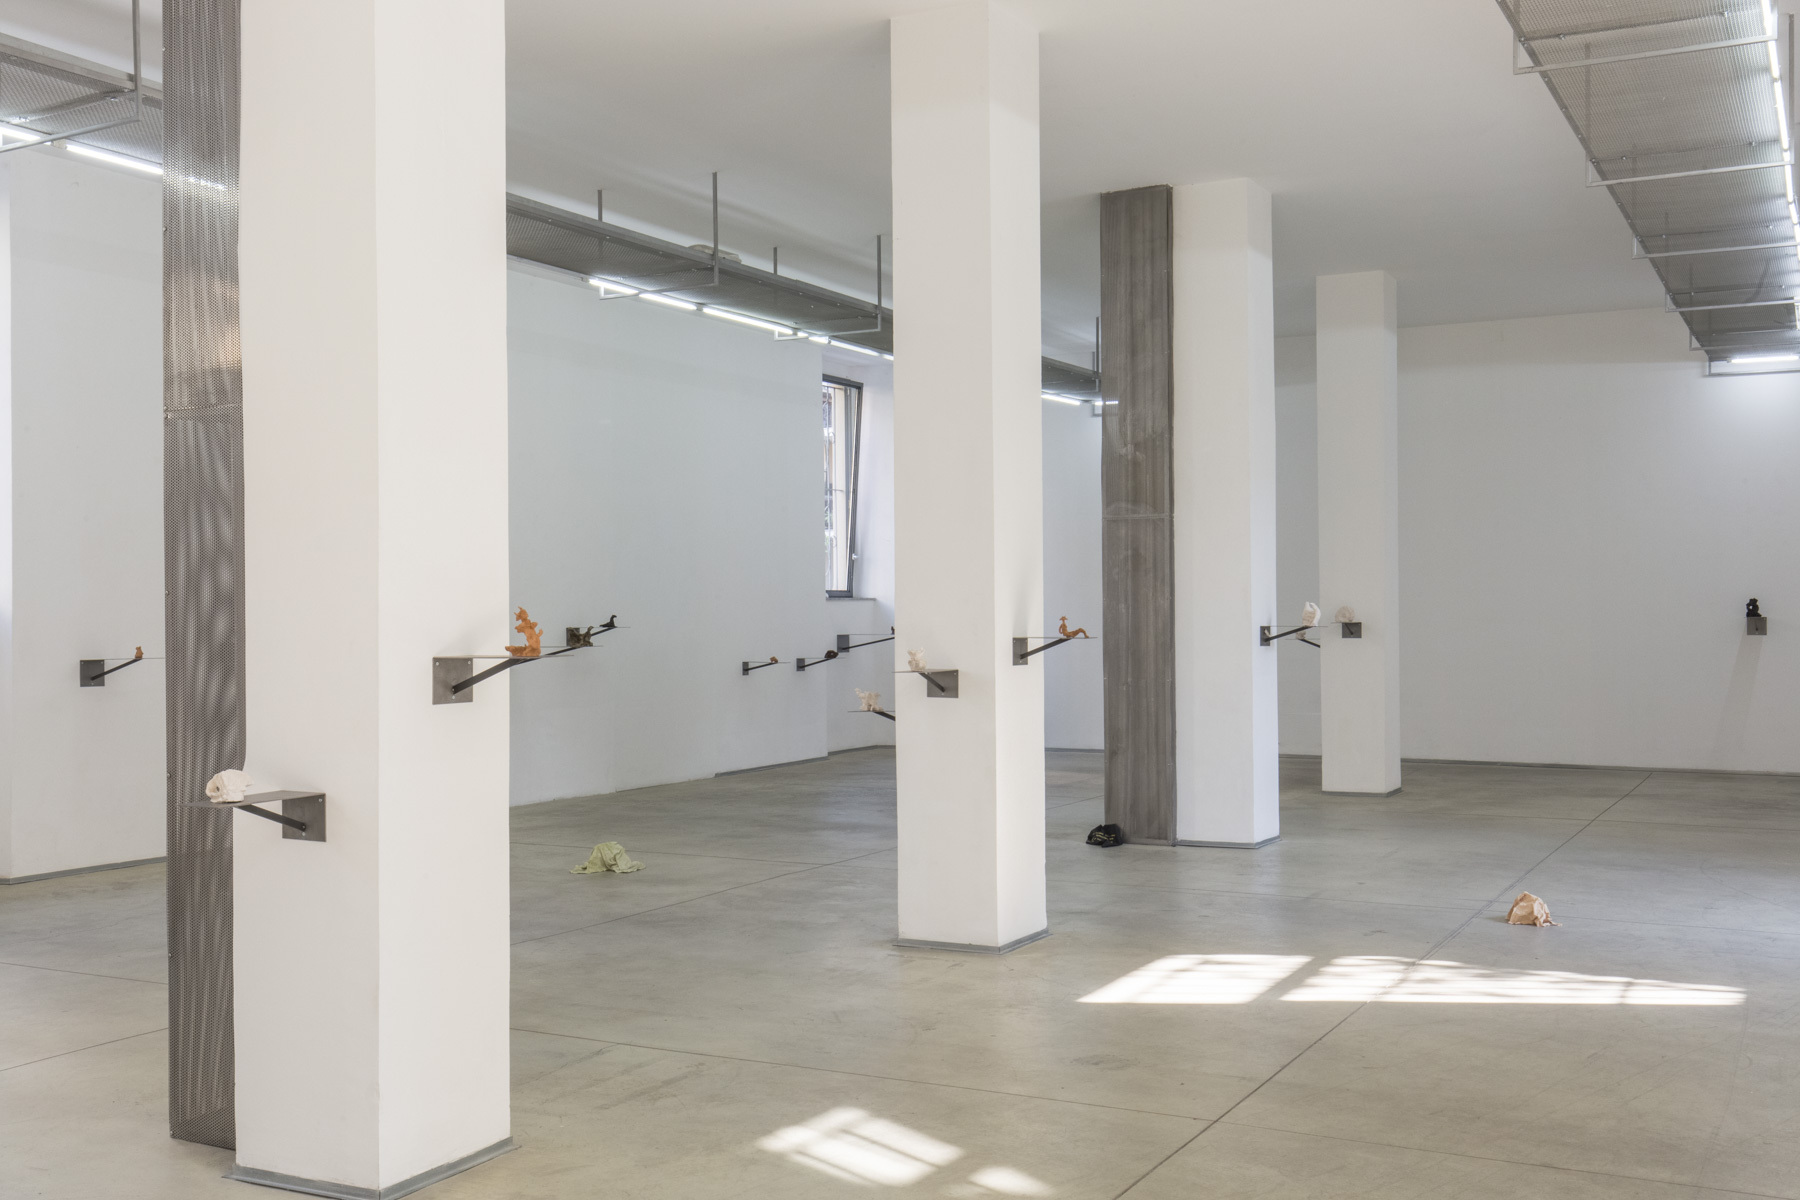 8. Matilde Sambo, Dormiveglia, exhibition view, Associazione Barriera, 2022. Photo by Gabriele Abbruzzese.